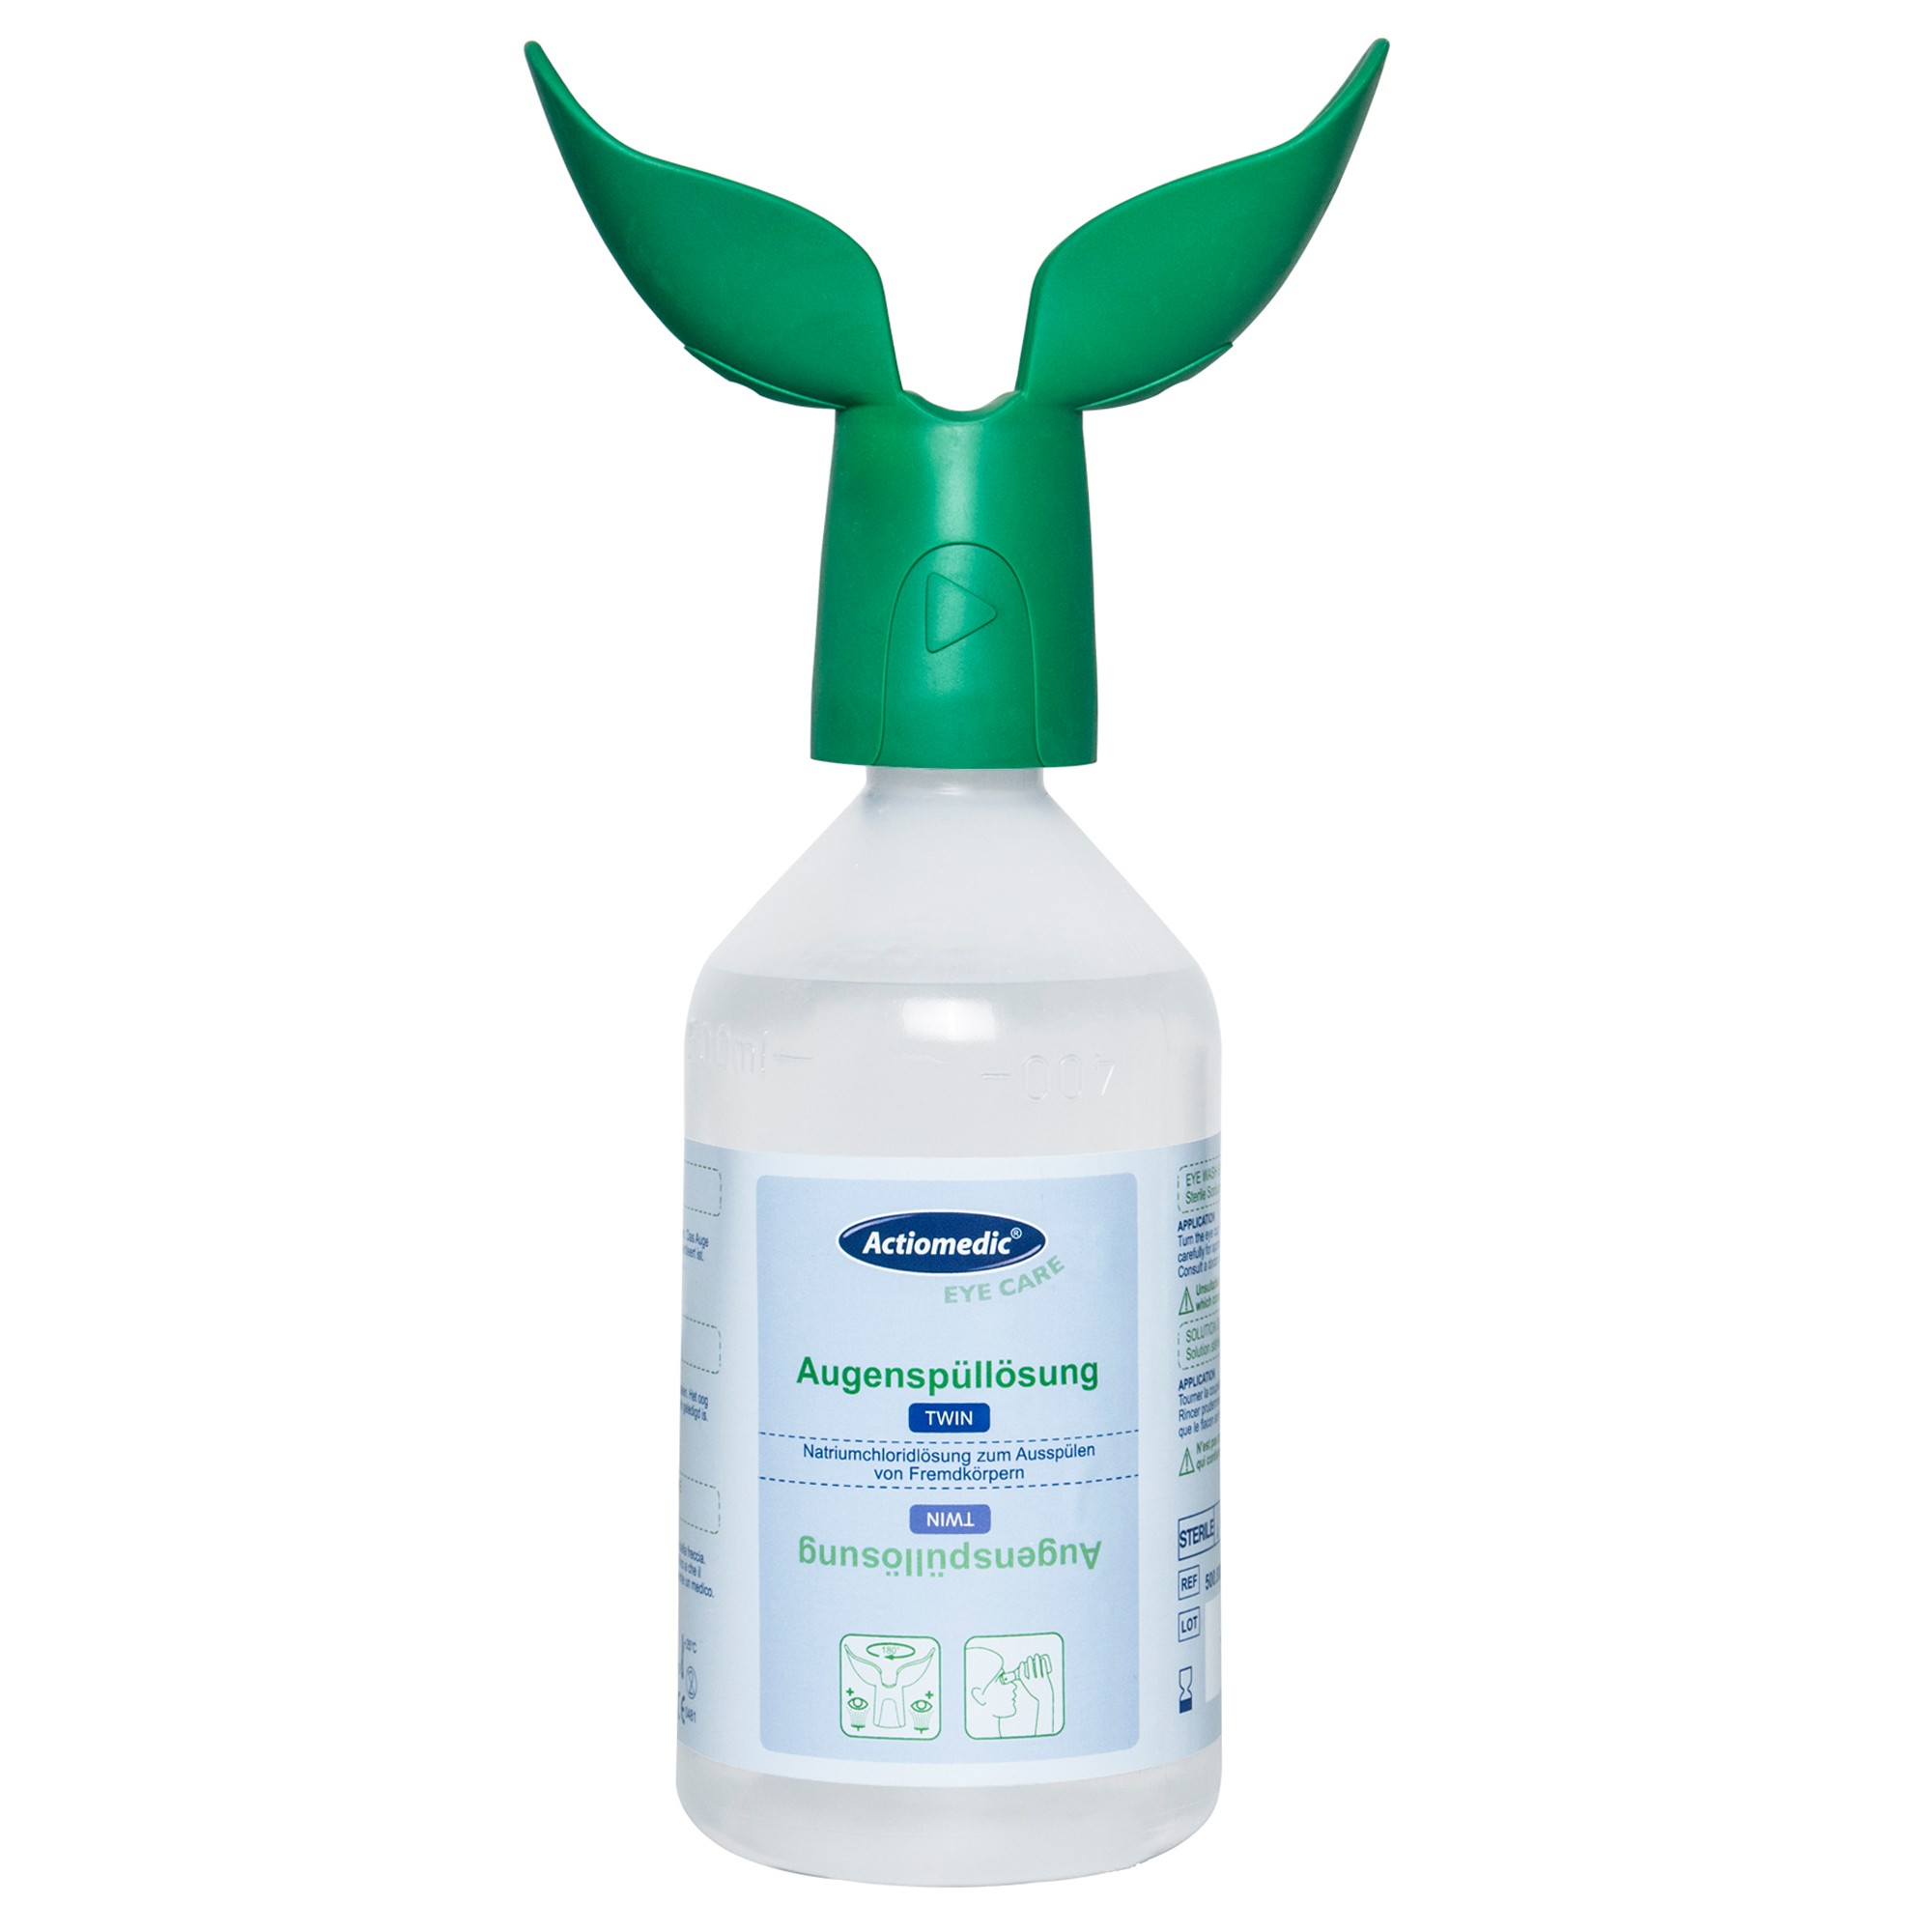 Actiomedic® Augenspülflasche TWIN mit Natriumchloridlösung 0,9% 500 ml